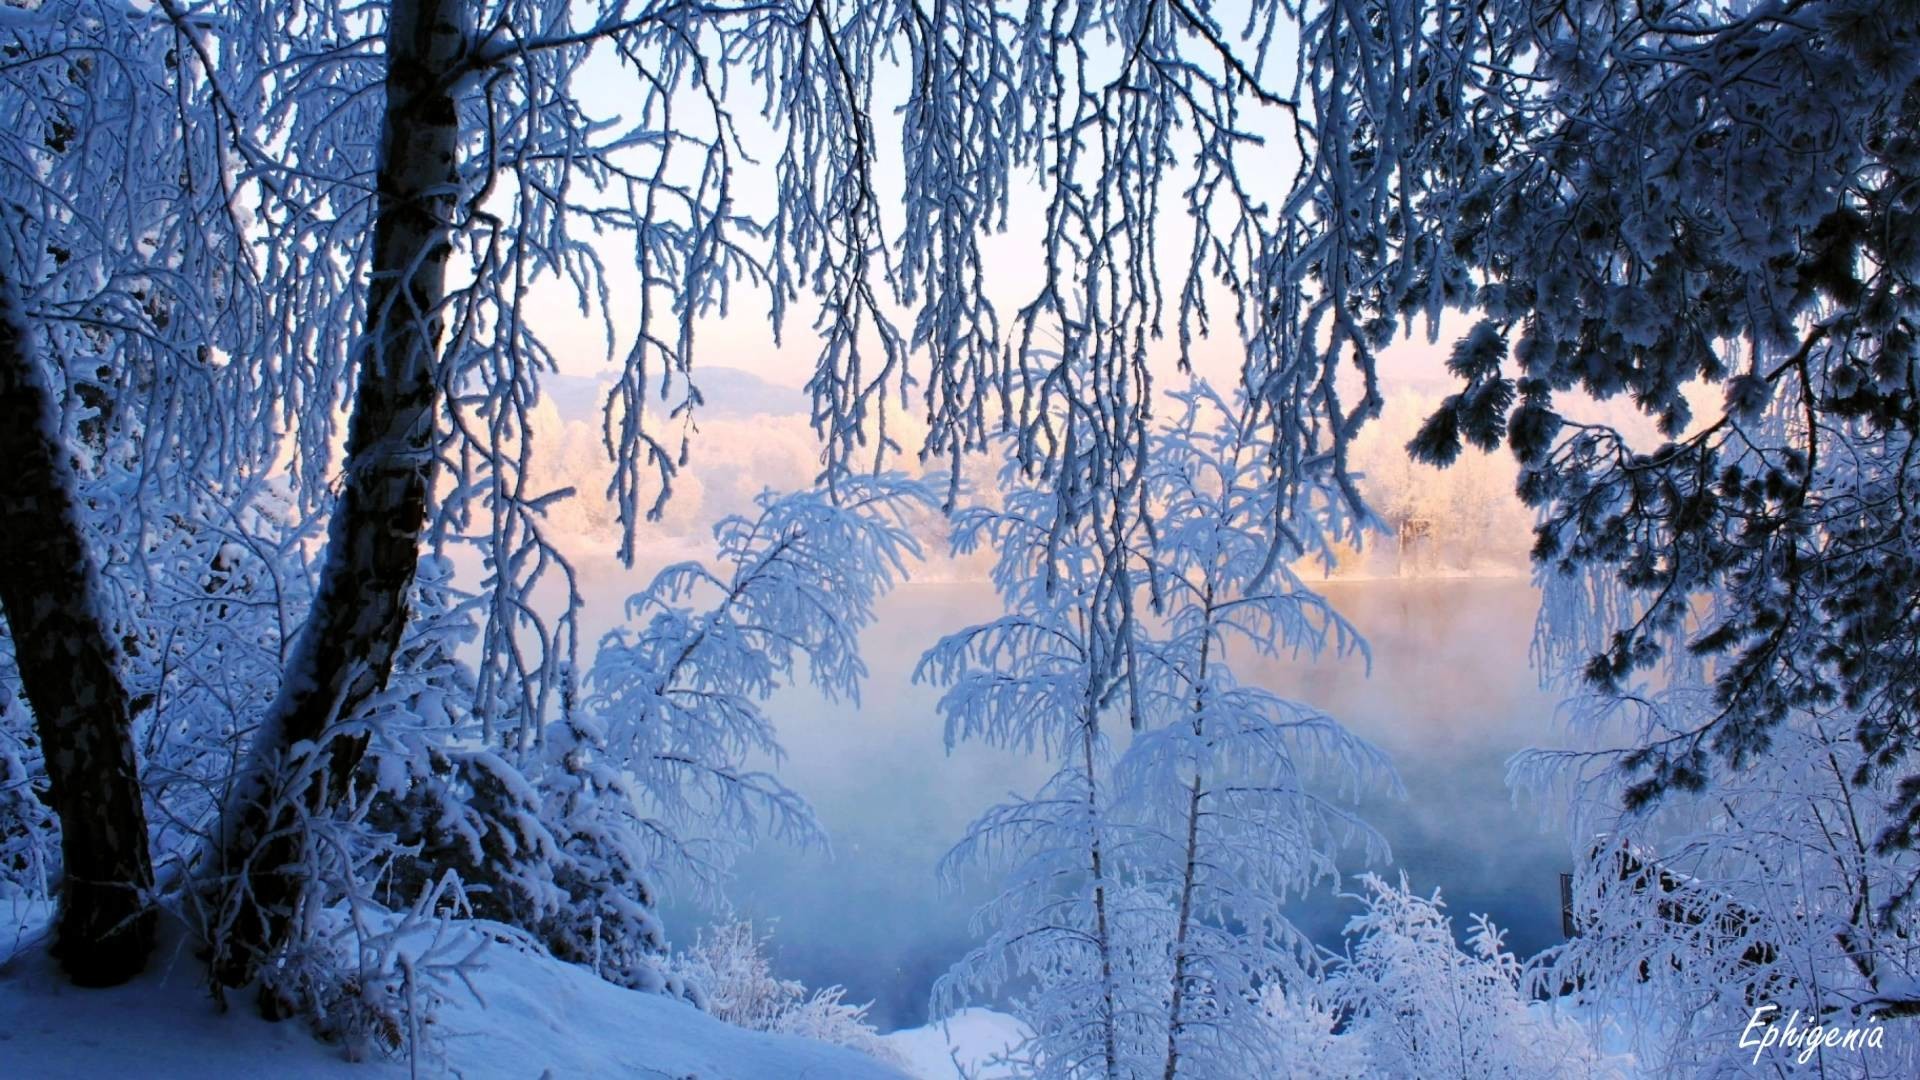 Beautiful Finland Winter, Finnish Winter Landscape in 4K ultra HD – YouTube